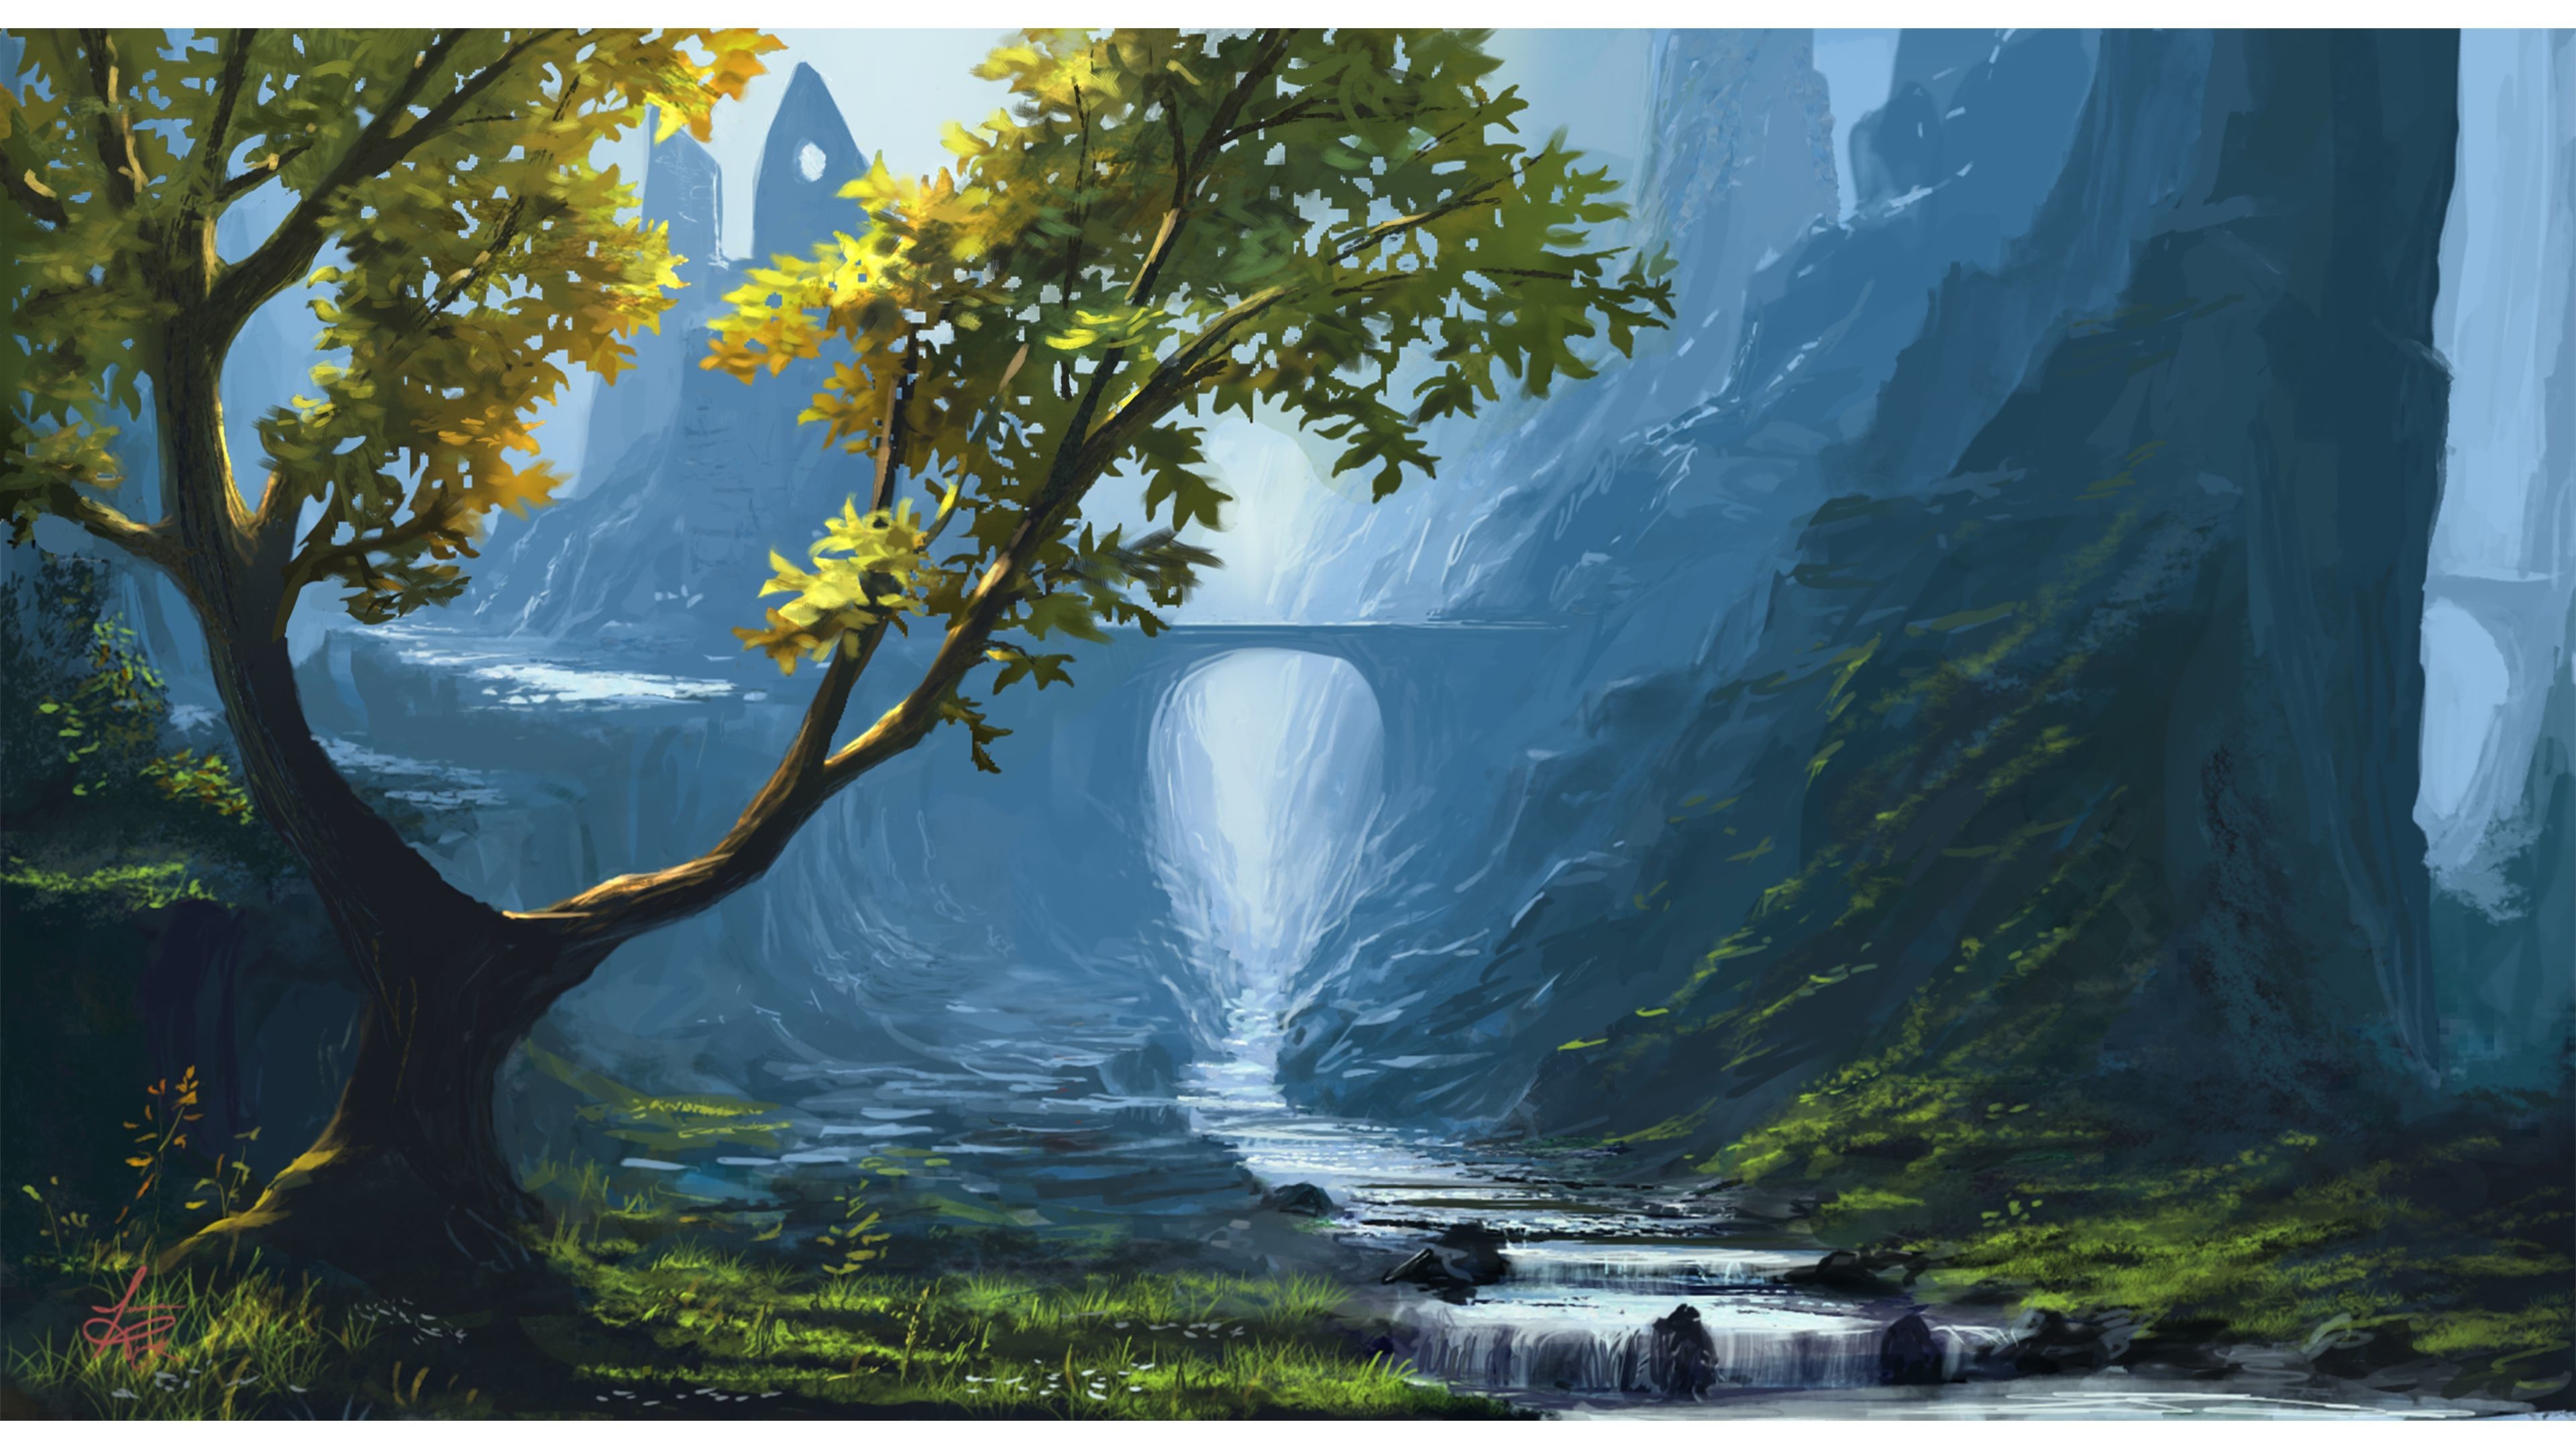 Fantasy 4k Nature Wallpaper Beautiful Natural Scenery